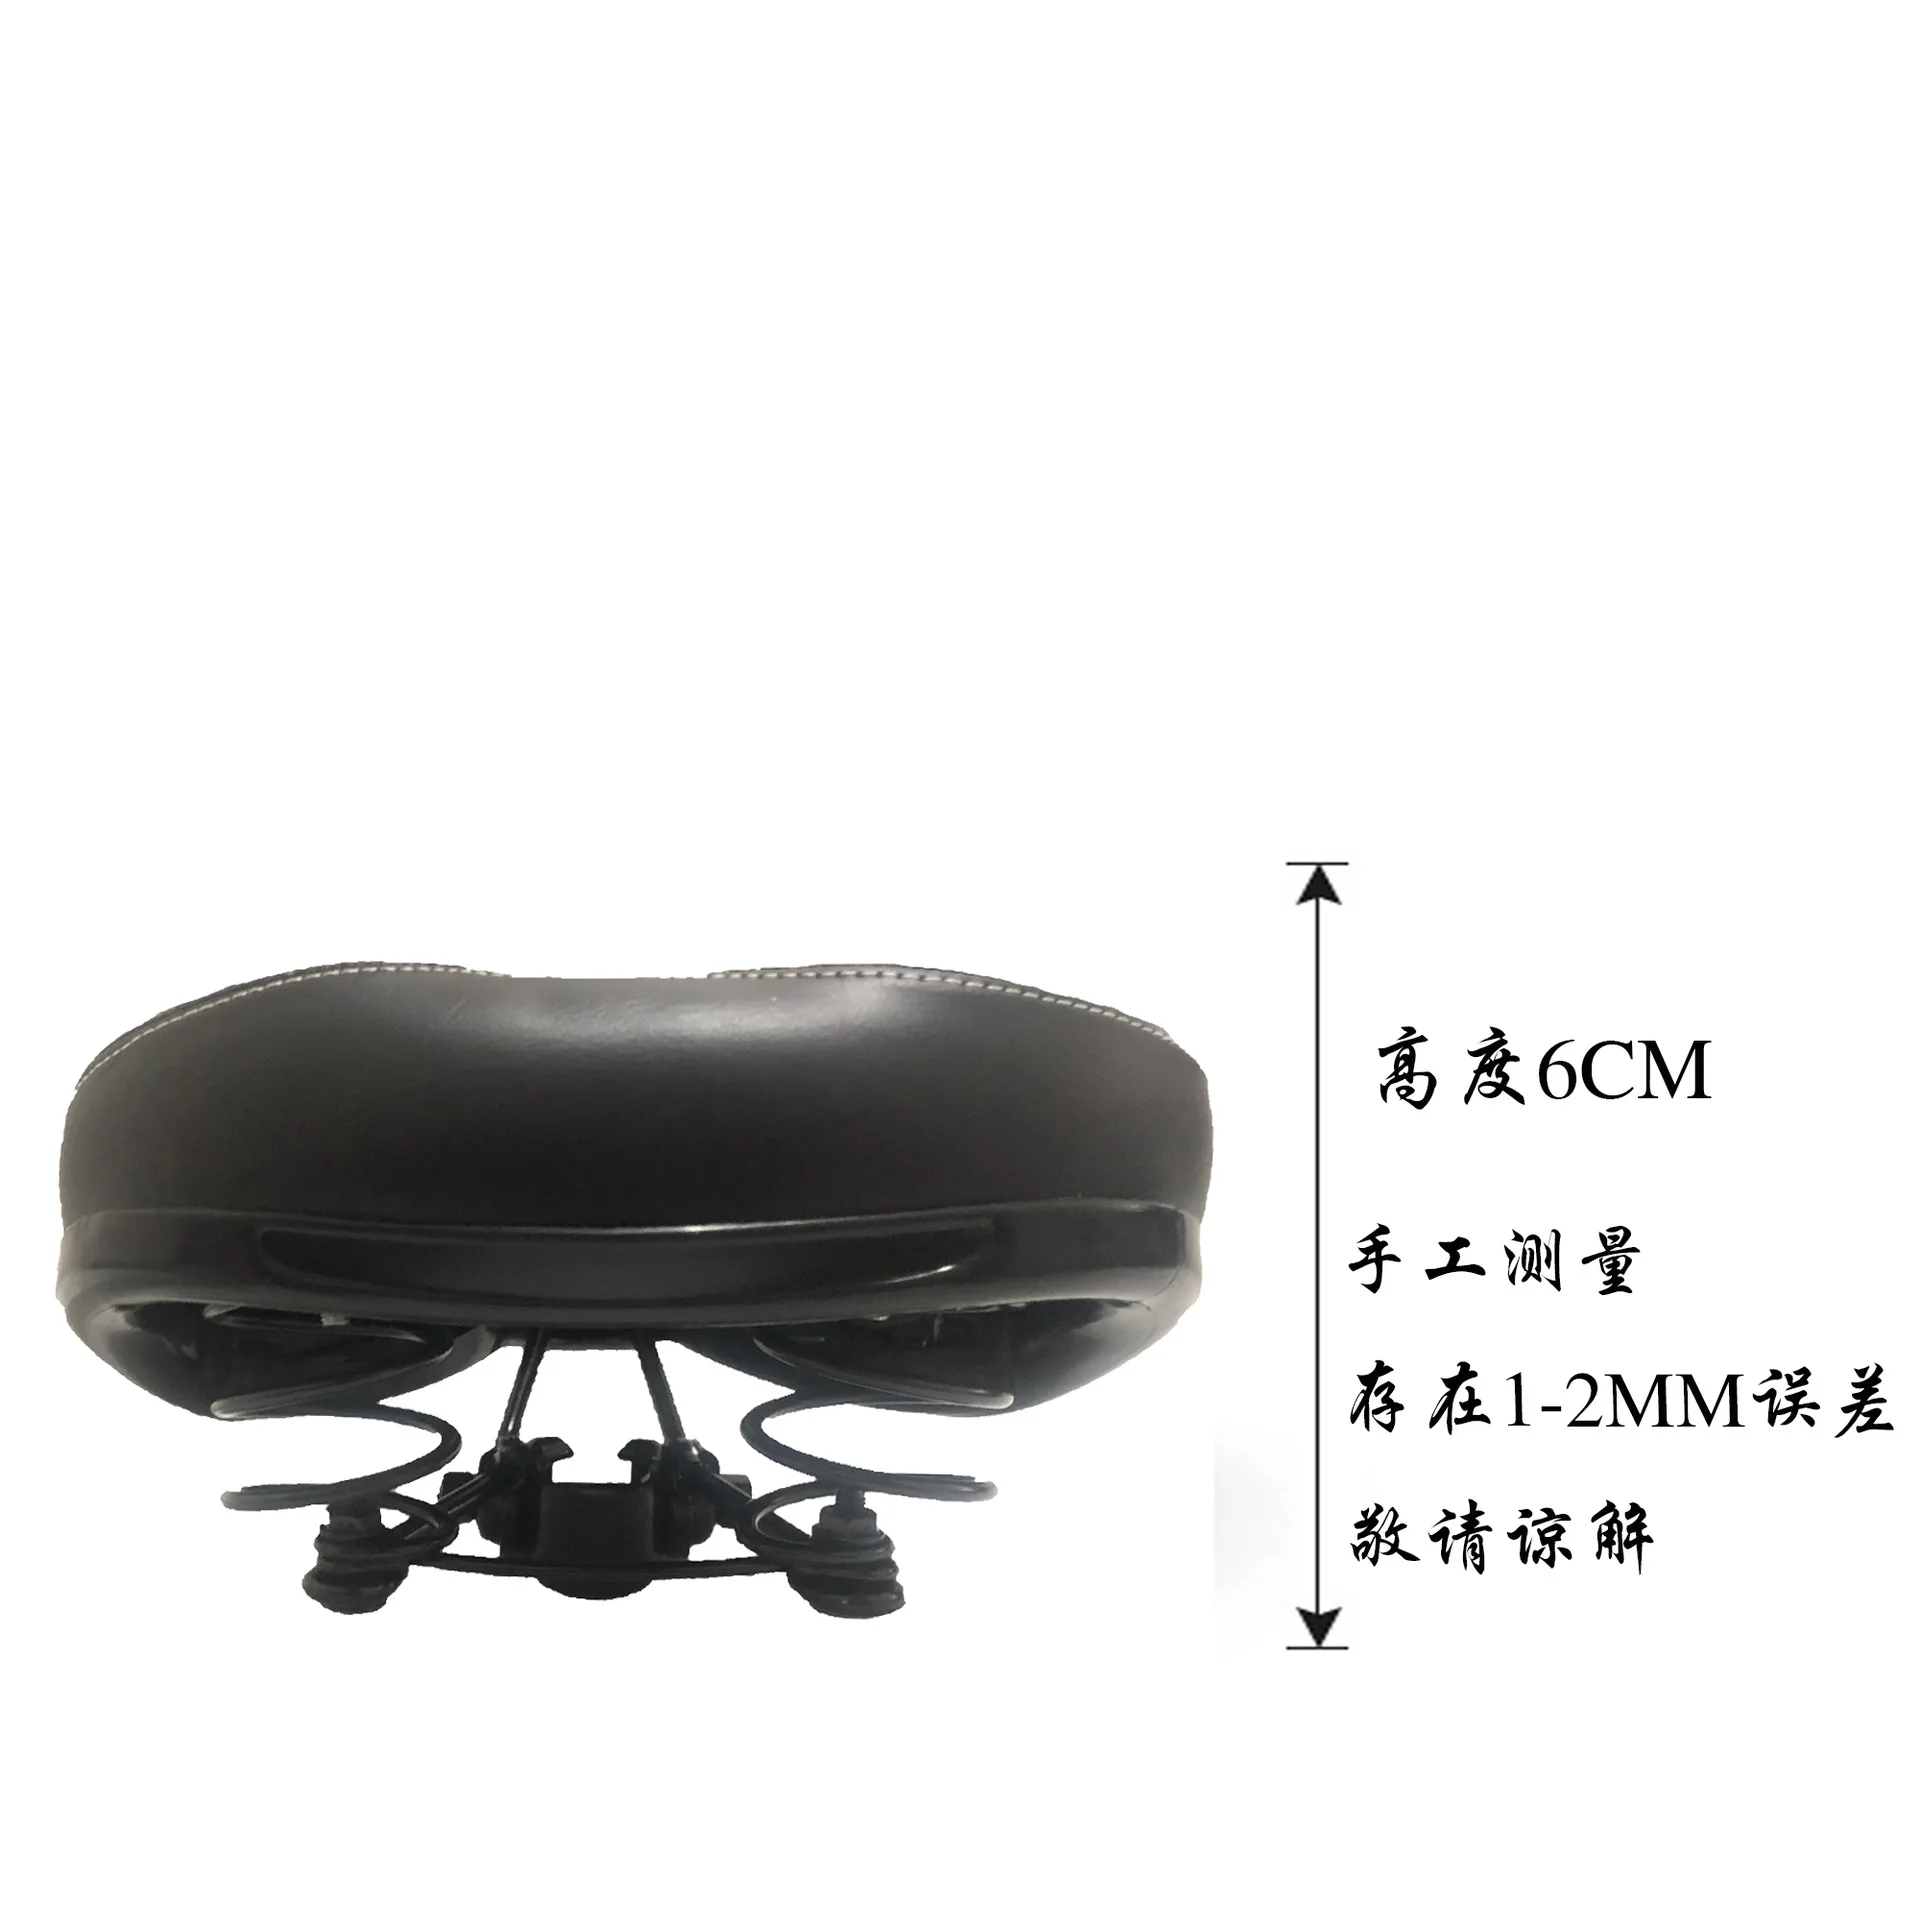 Седло для горного велосипеда, удобный коврик для сиденья велосипеда, мягкие эластичные губки/широкое седло